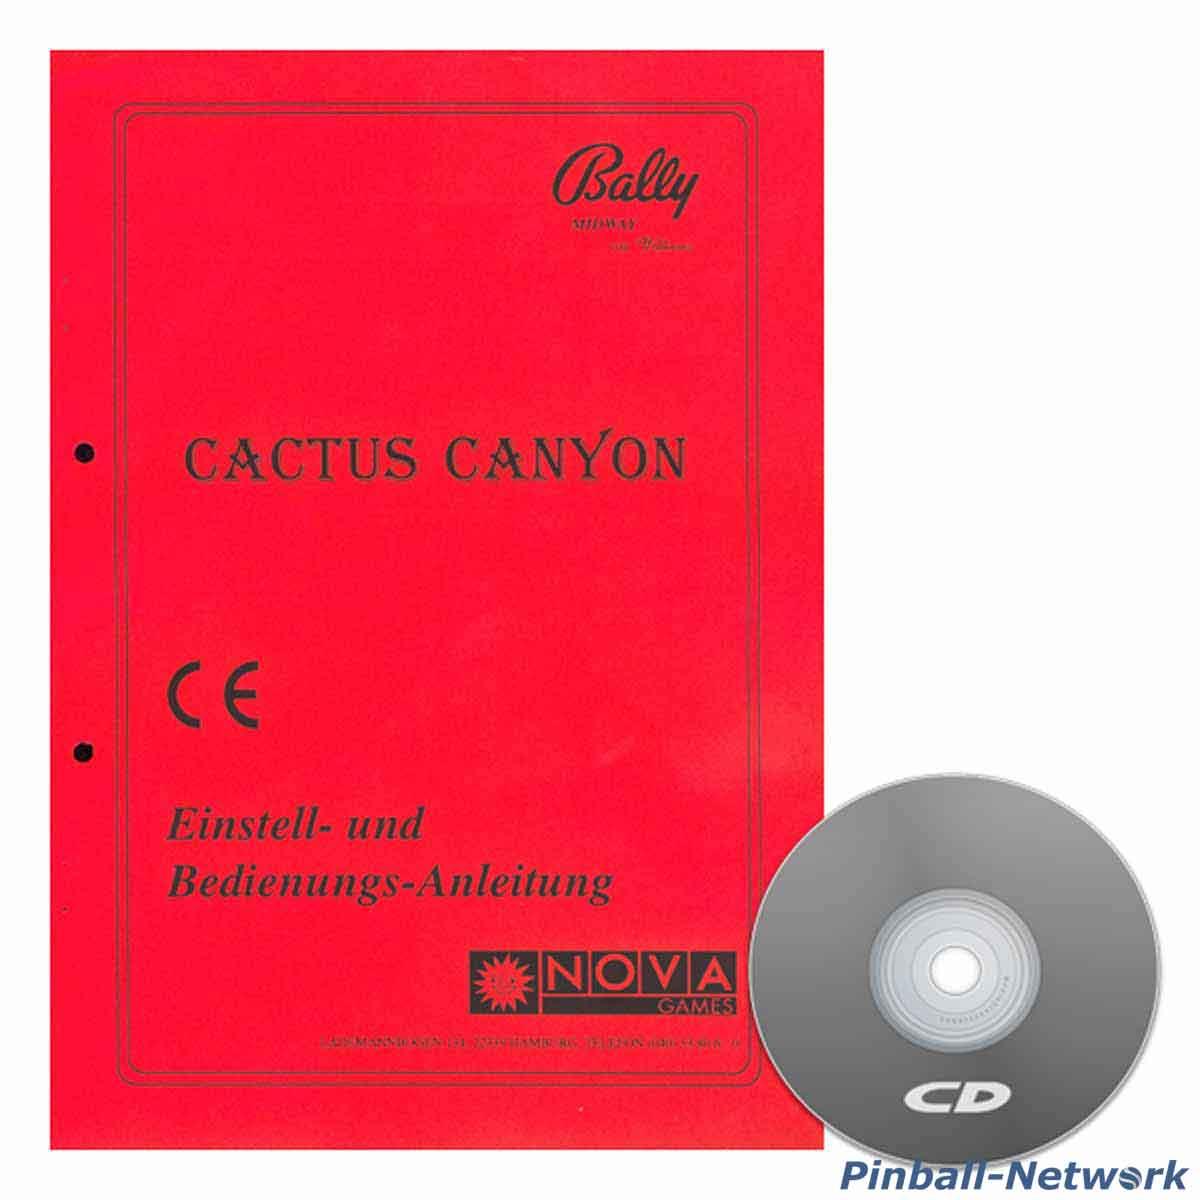 Cactus Canyon Einstell- und Bedienungs-Anleitung